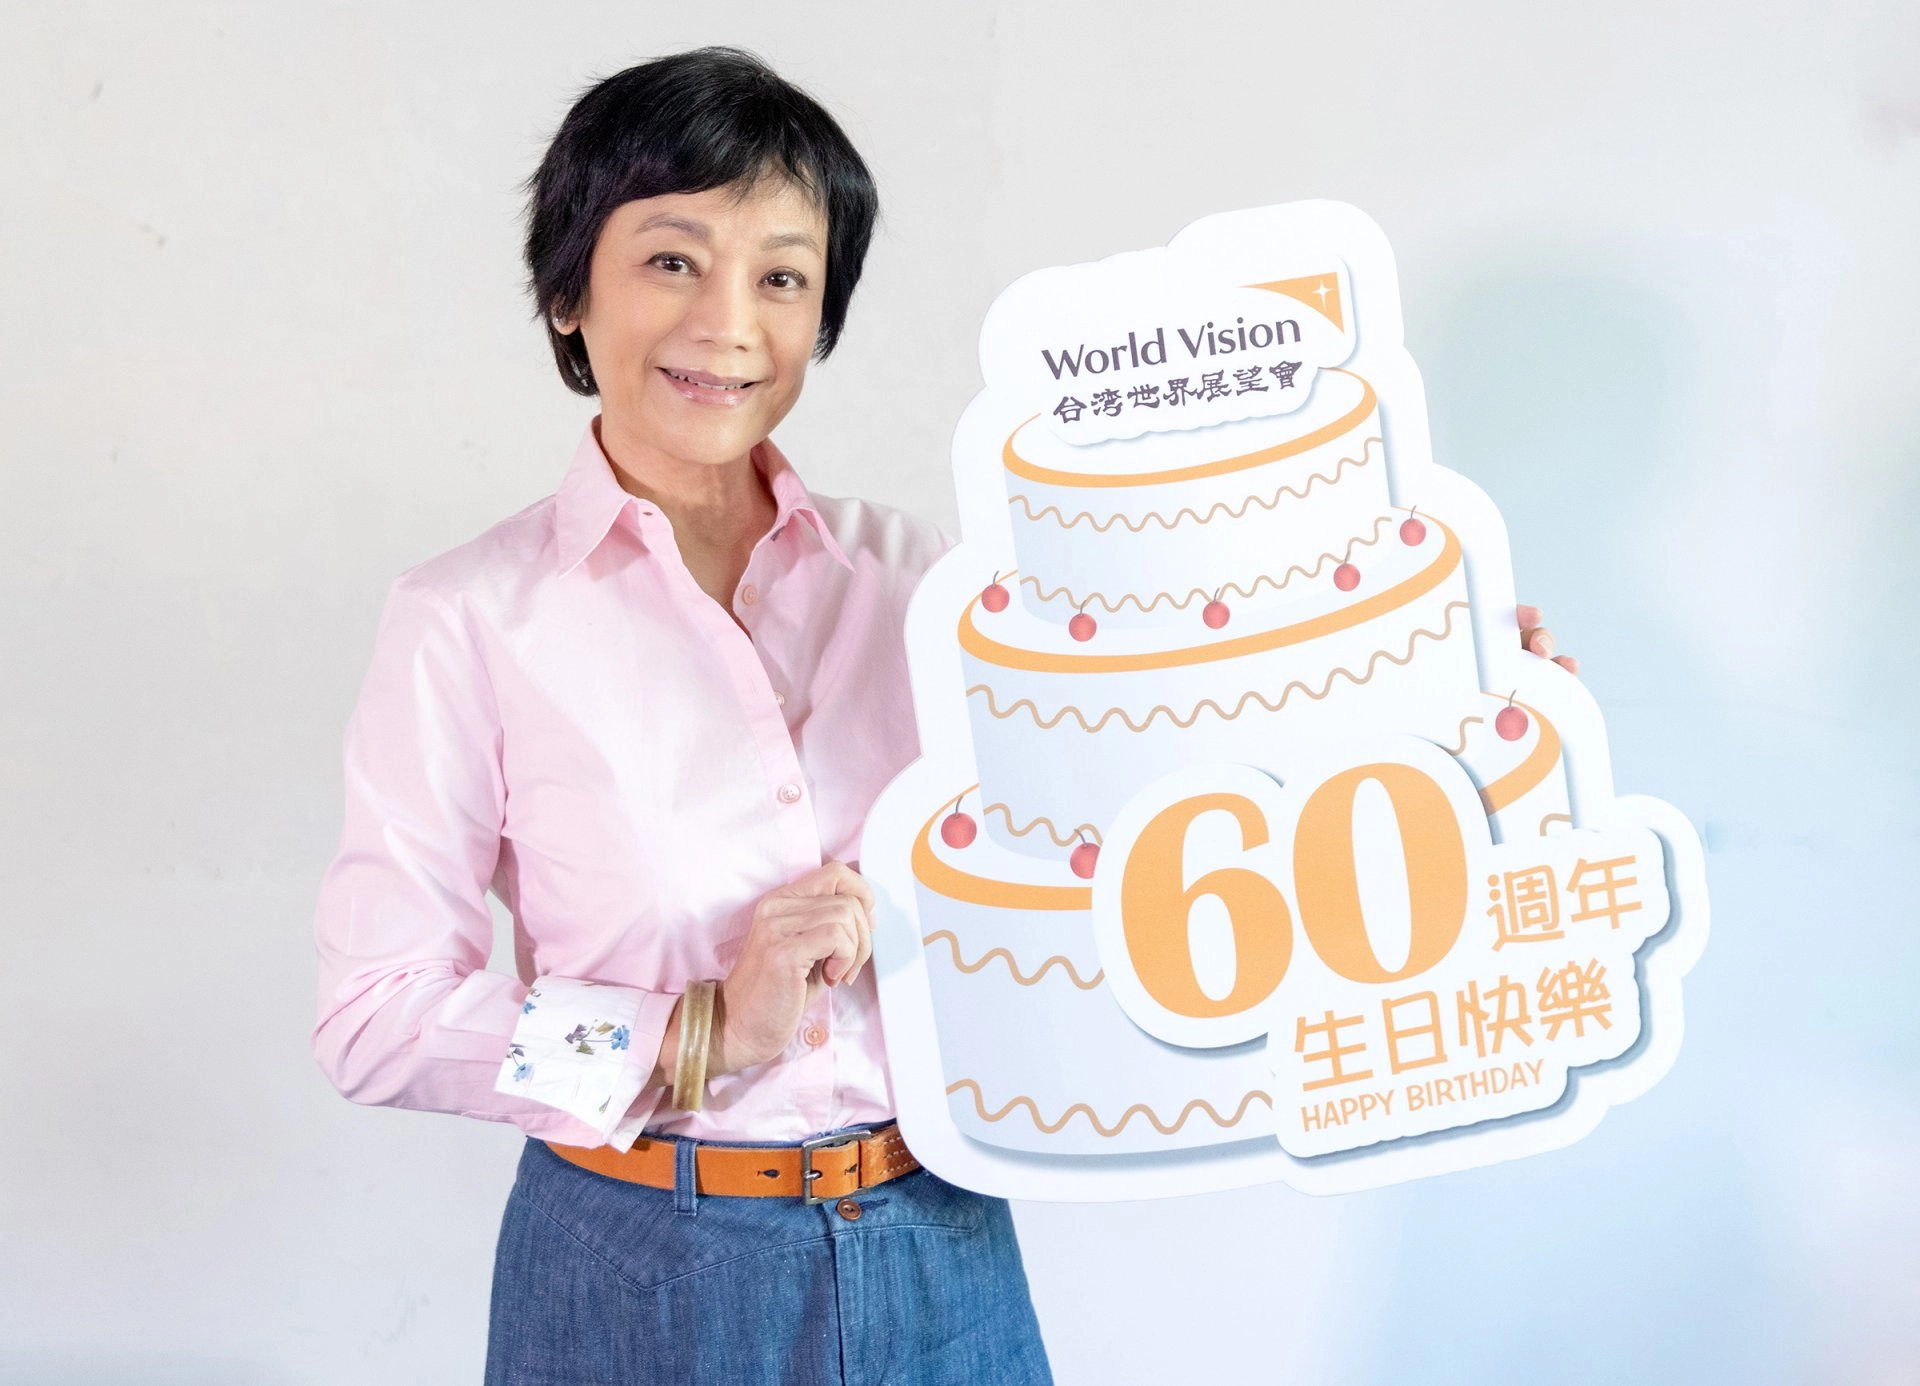 在公益路上攜手同行30年，展望會終身志工張艾嘉祝台灣世界展望會60歲生日快樂。